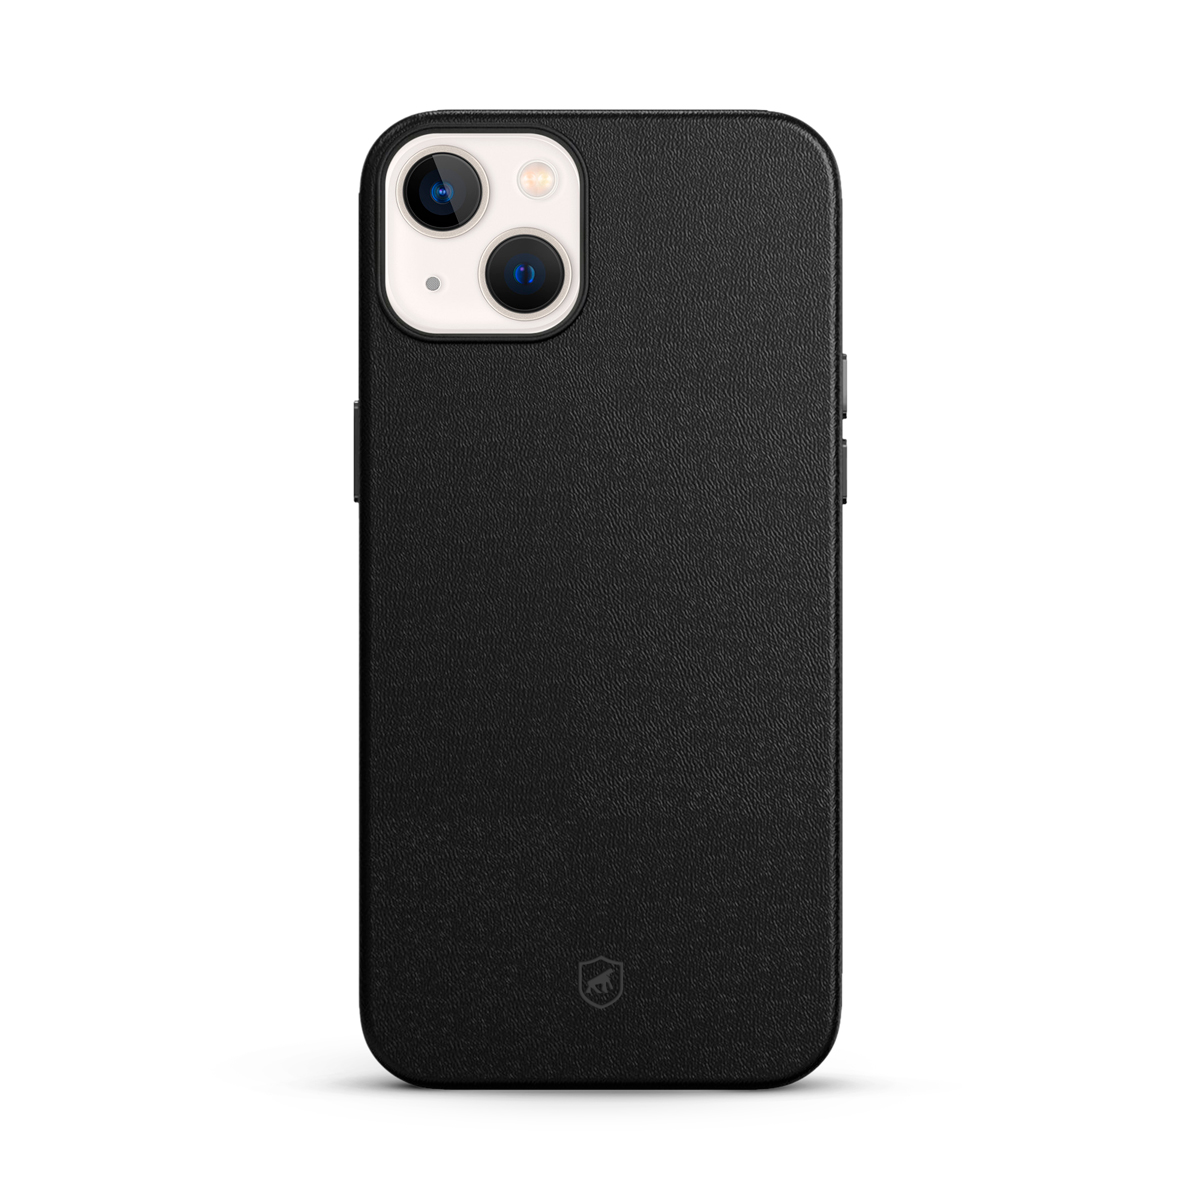 iPhone branco com capa preta de couro da GShield